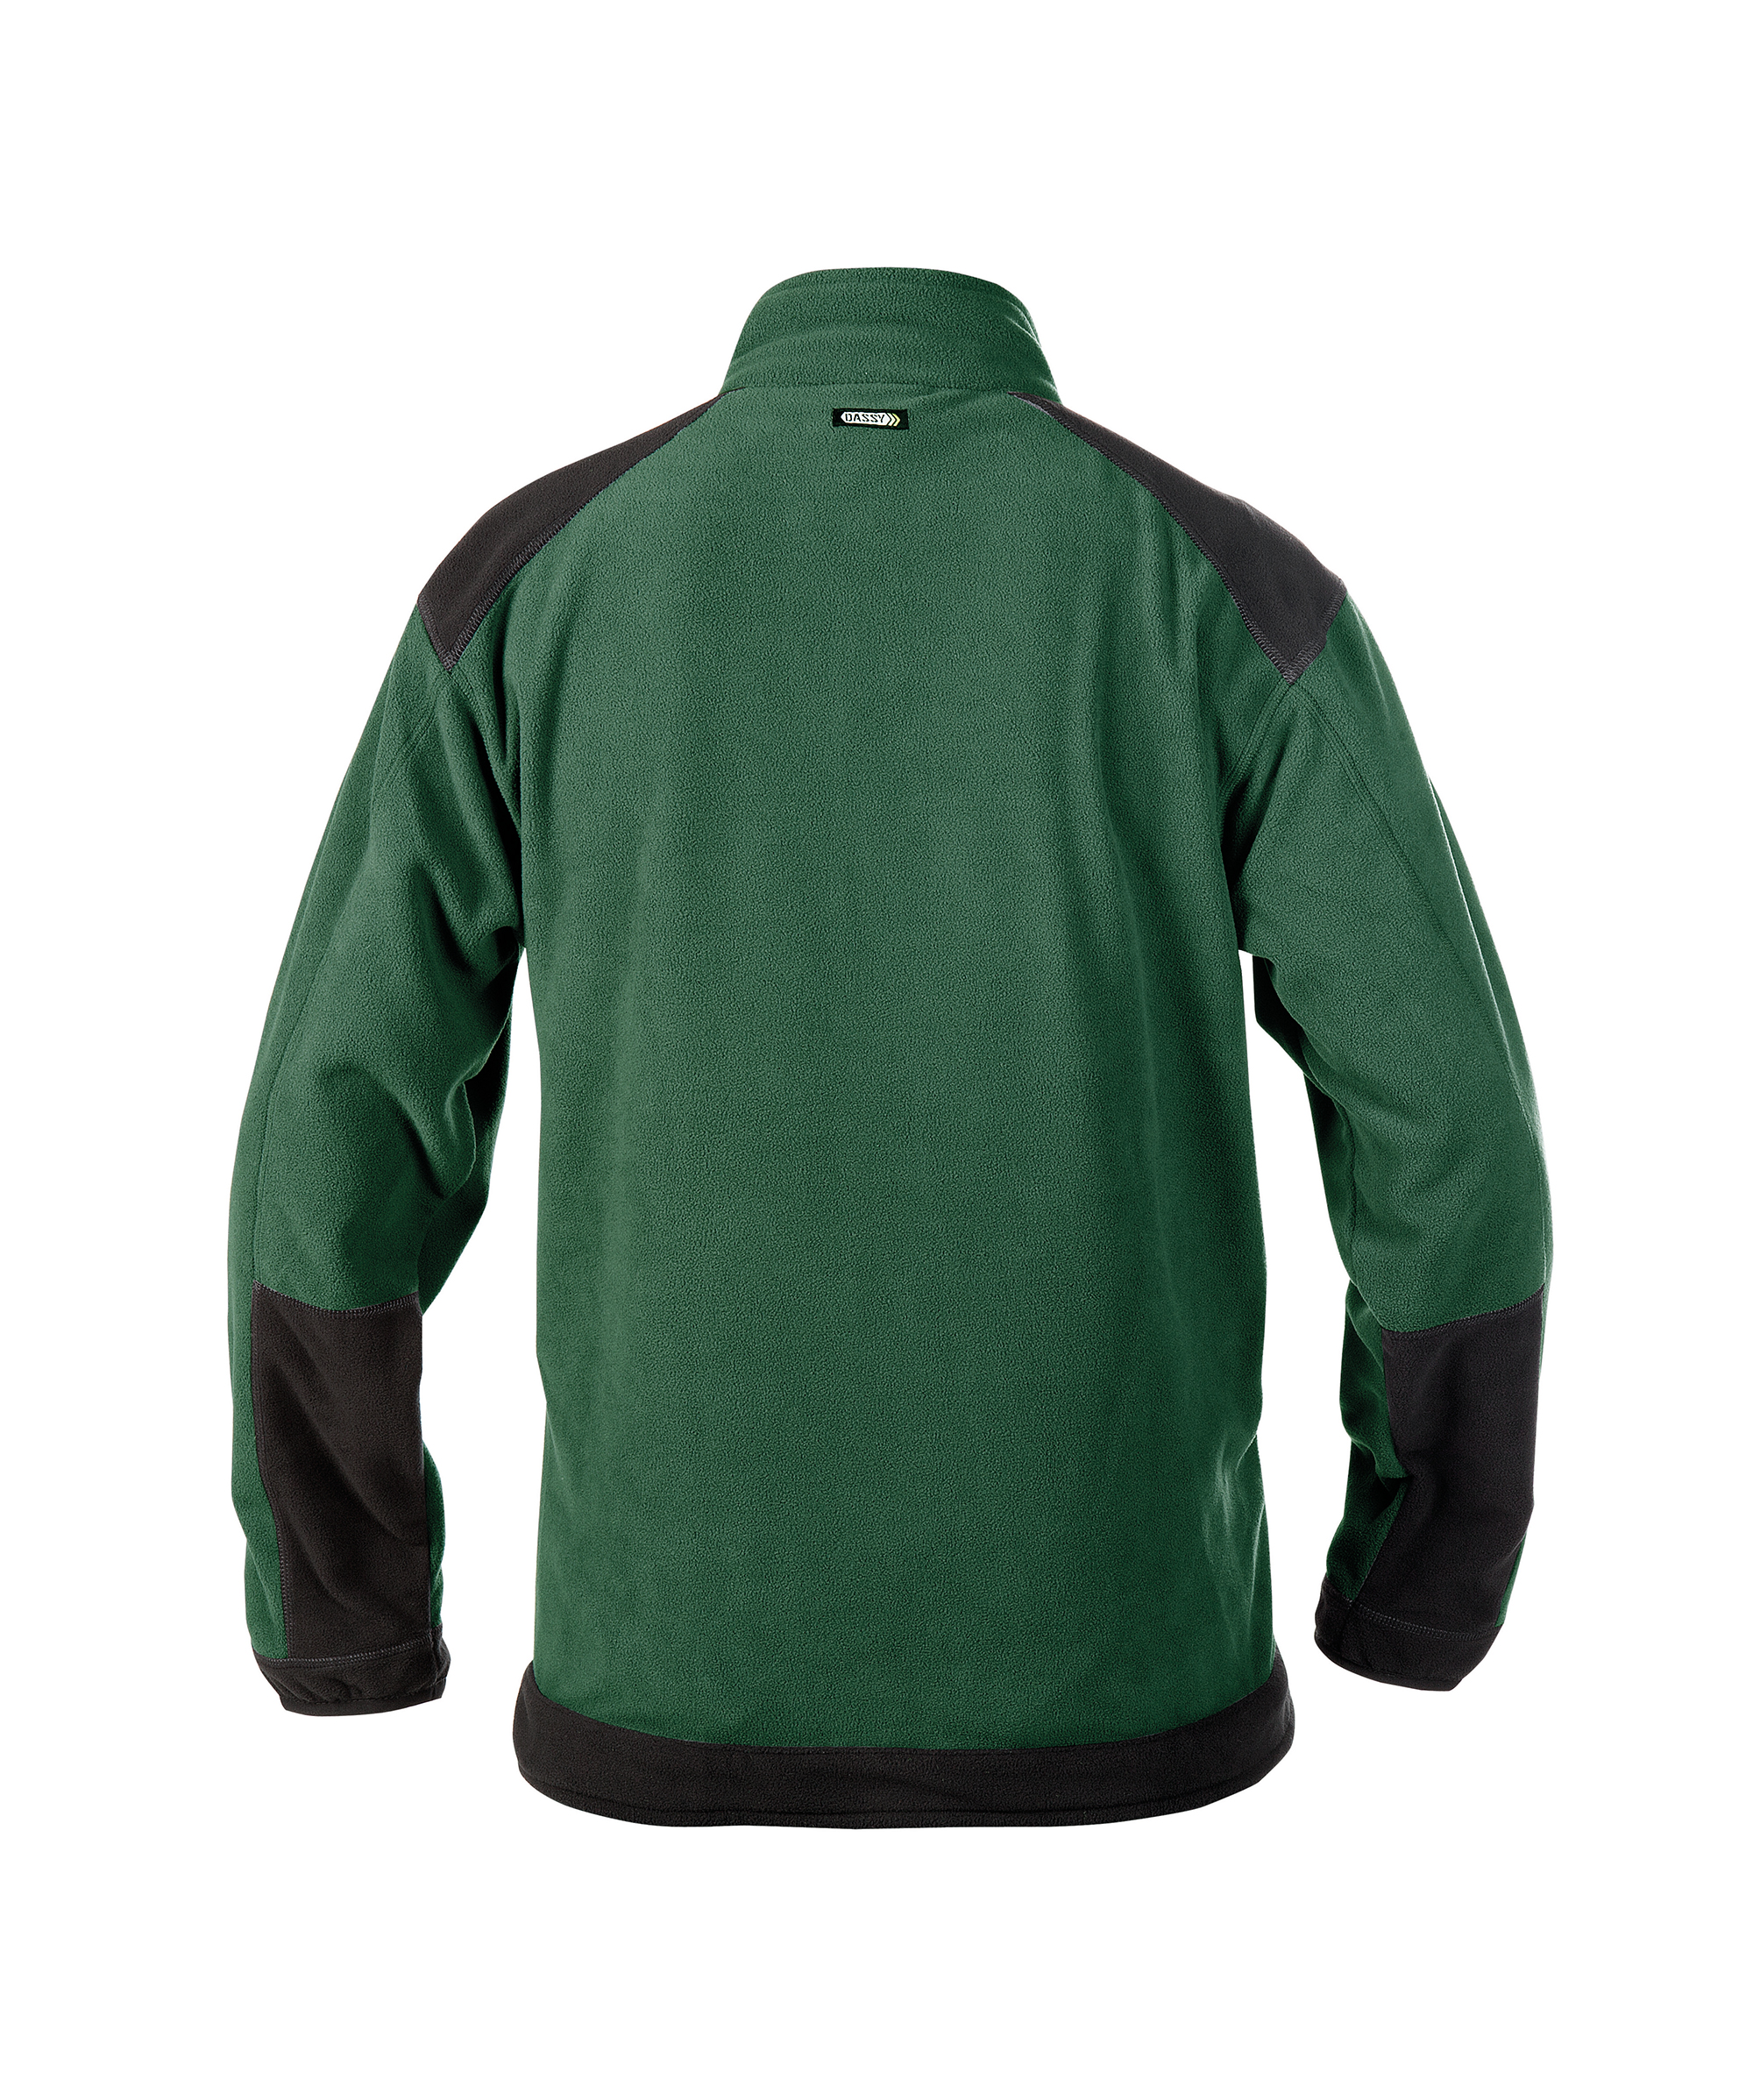 kazan_two-tone-fleece-jacket_bottle-green-black_back.jpg